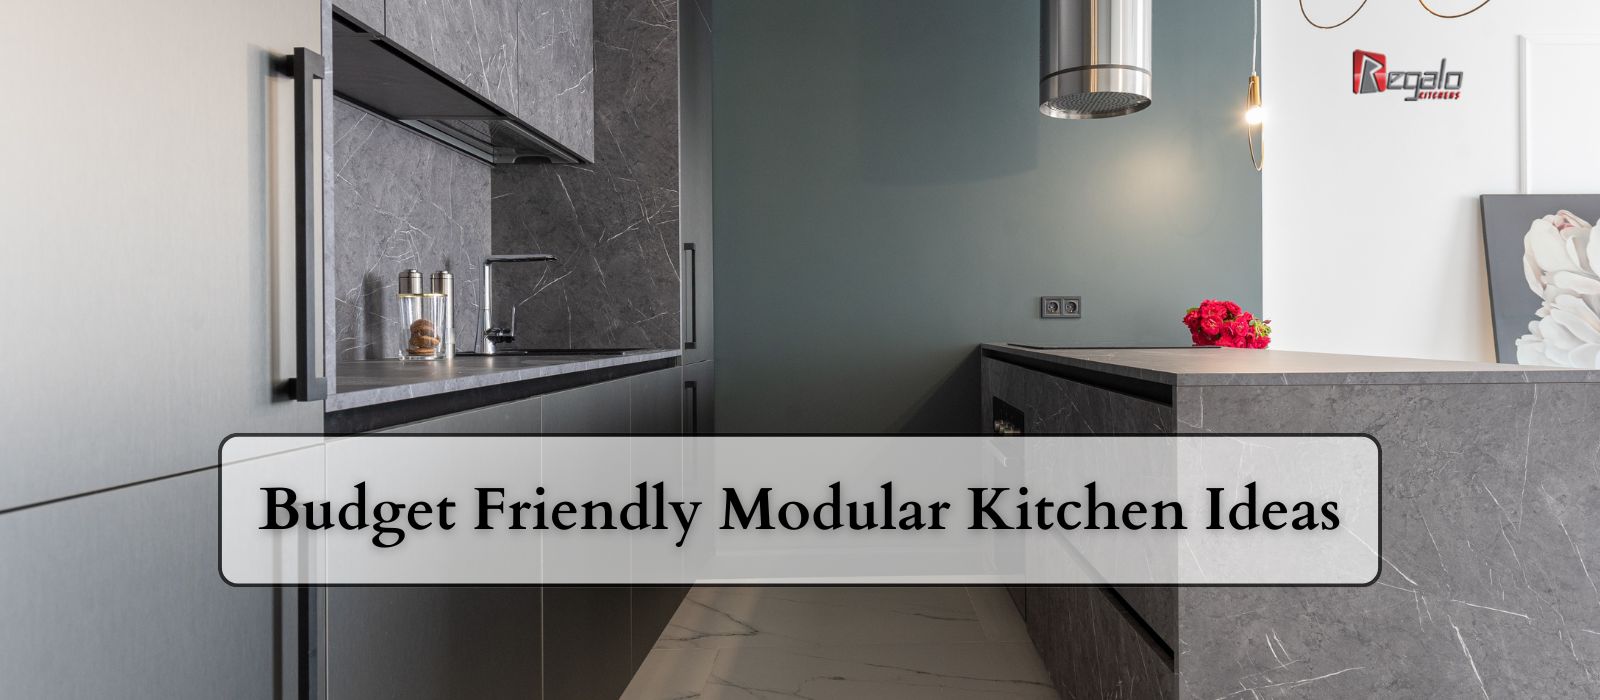 Budget Friendly Modular Kitchen Ideas